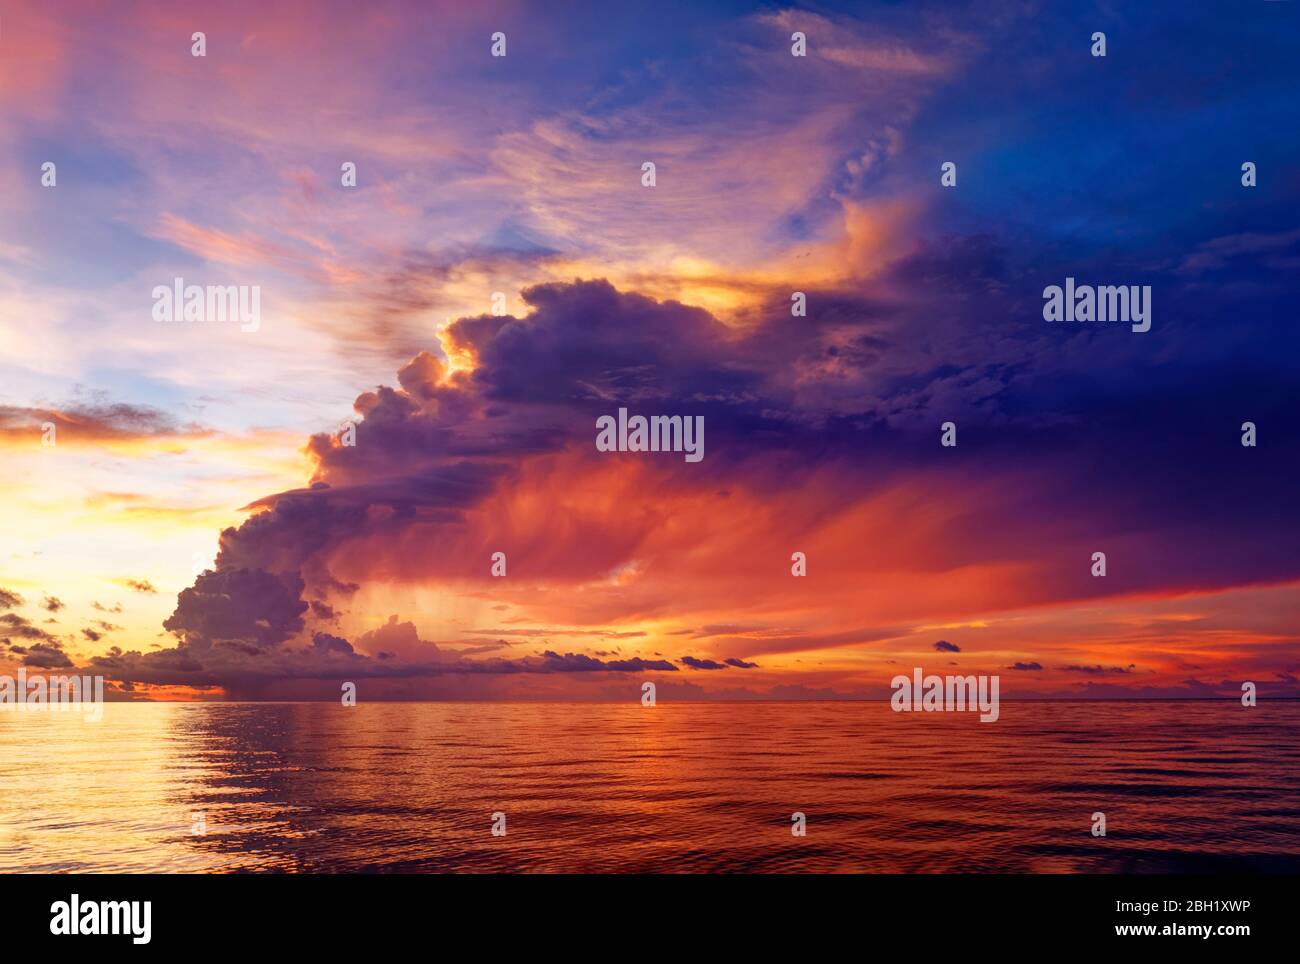 Grand orage après le coucher du soleil, ciel spectaculaire du soir, symbole calme devant la tempête, Océan Pacifique, Lac Sulu, Tubbataha Reef National Marine Banque D'Images